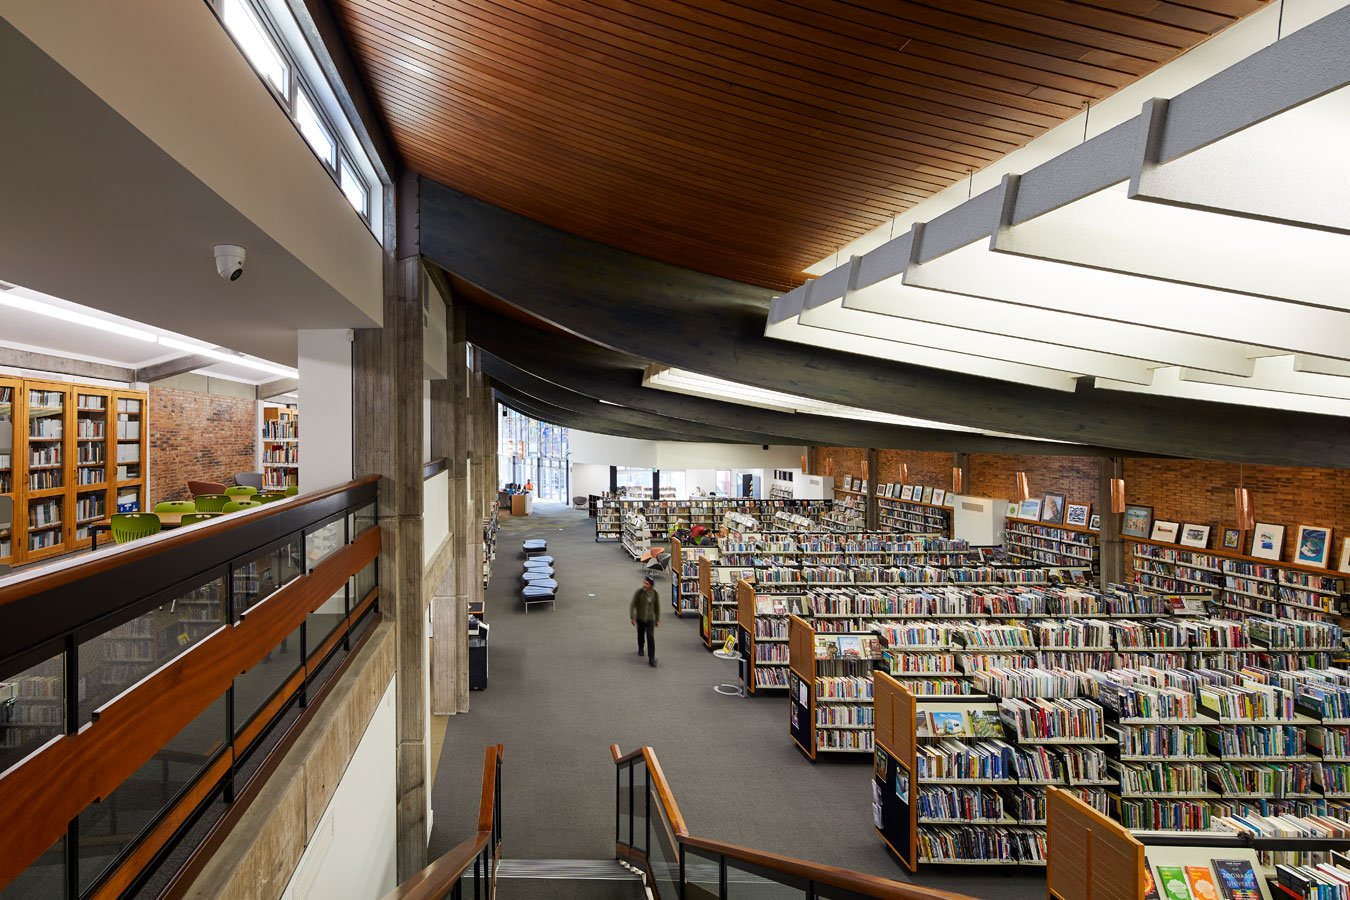 HB Williams Memorial Library